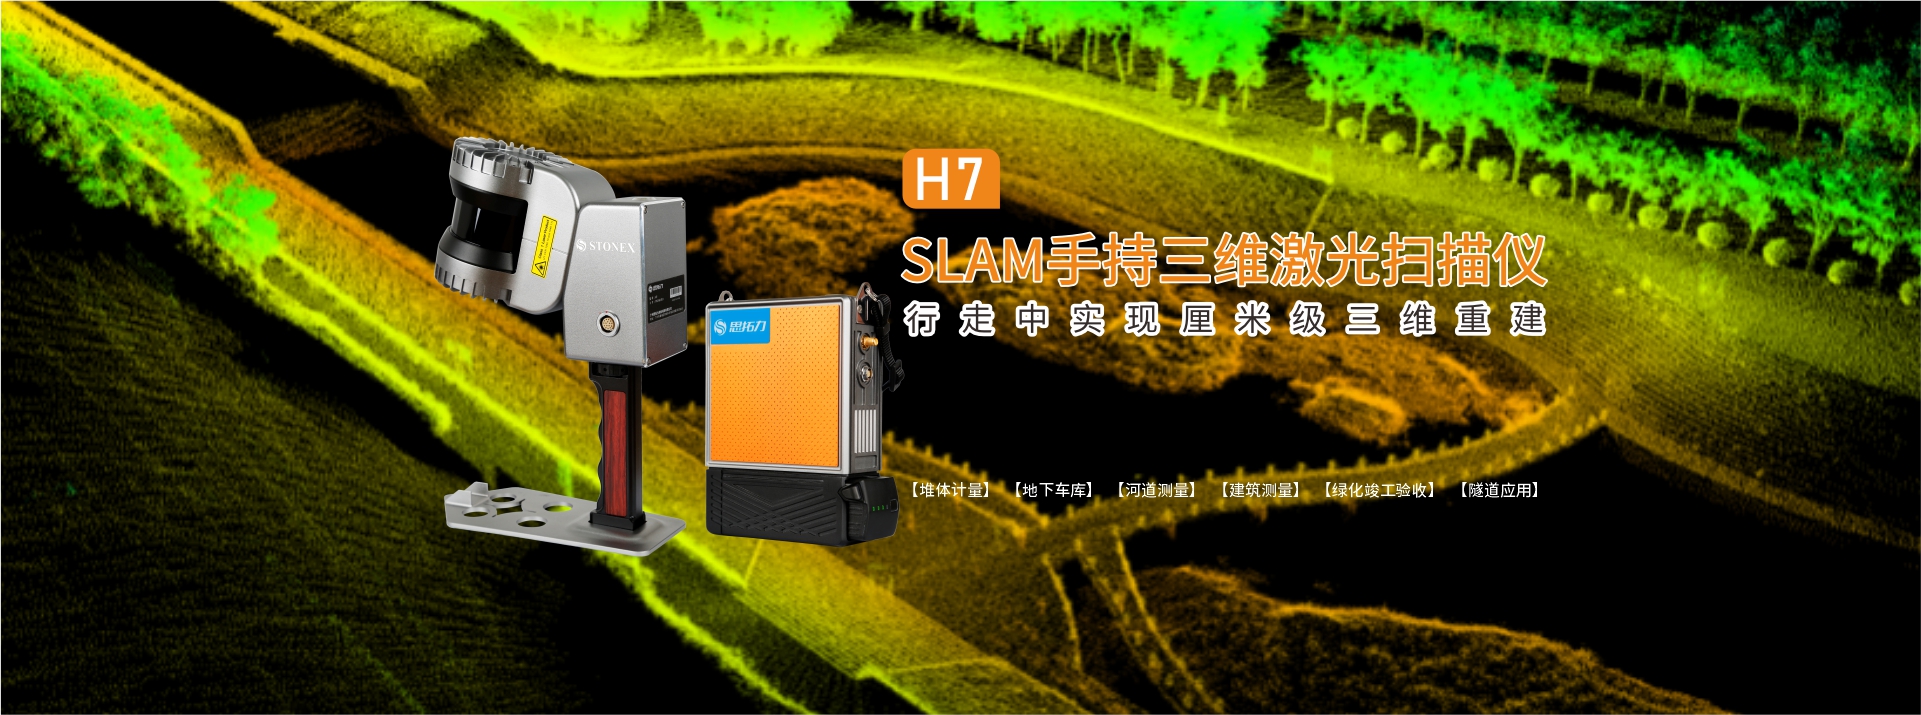 H7 SLAM手持三维激光扫描仪